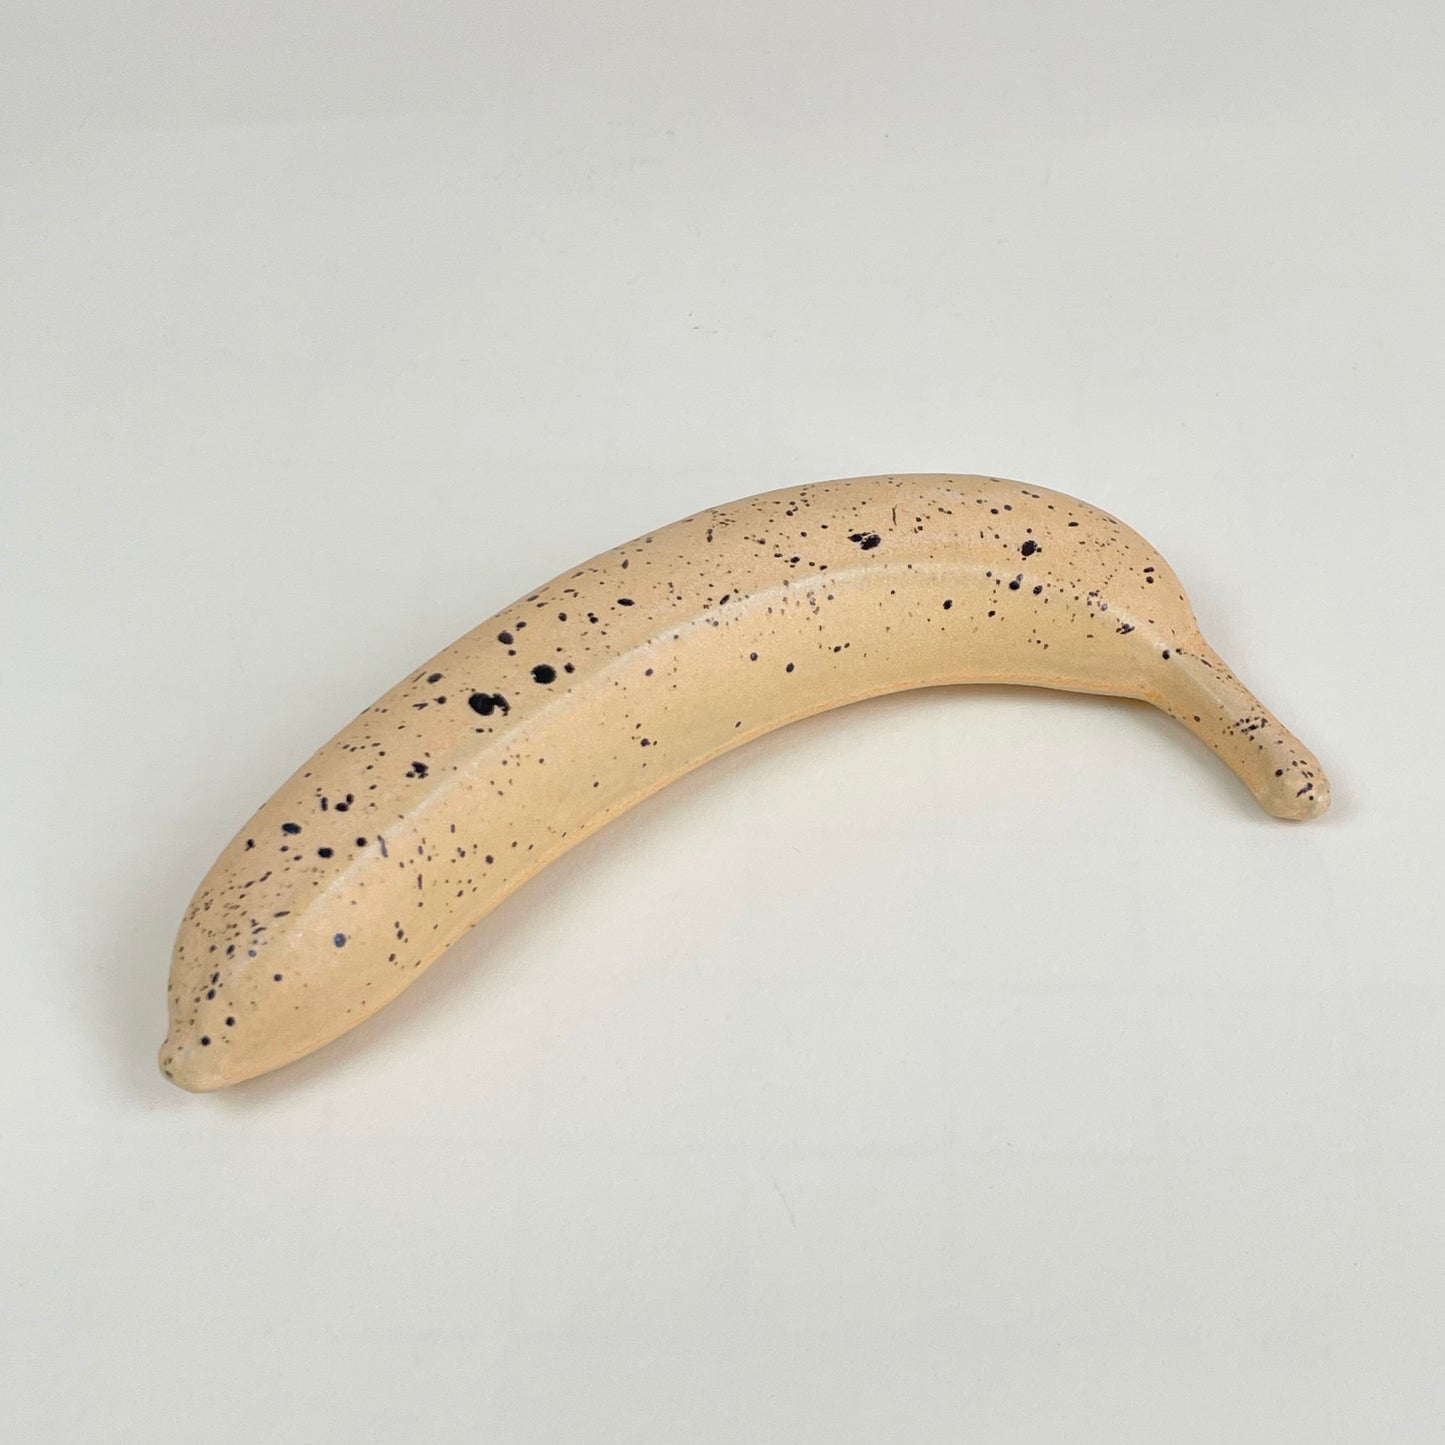 Orange ceramic banana with black speckles by Malwina Kleparska